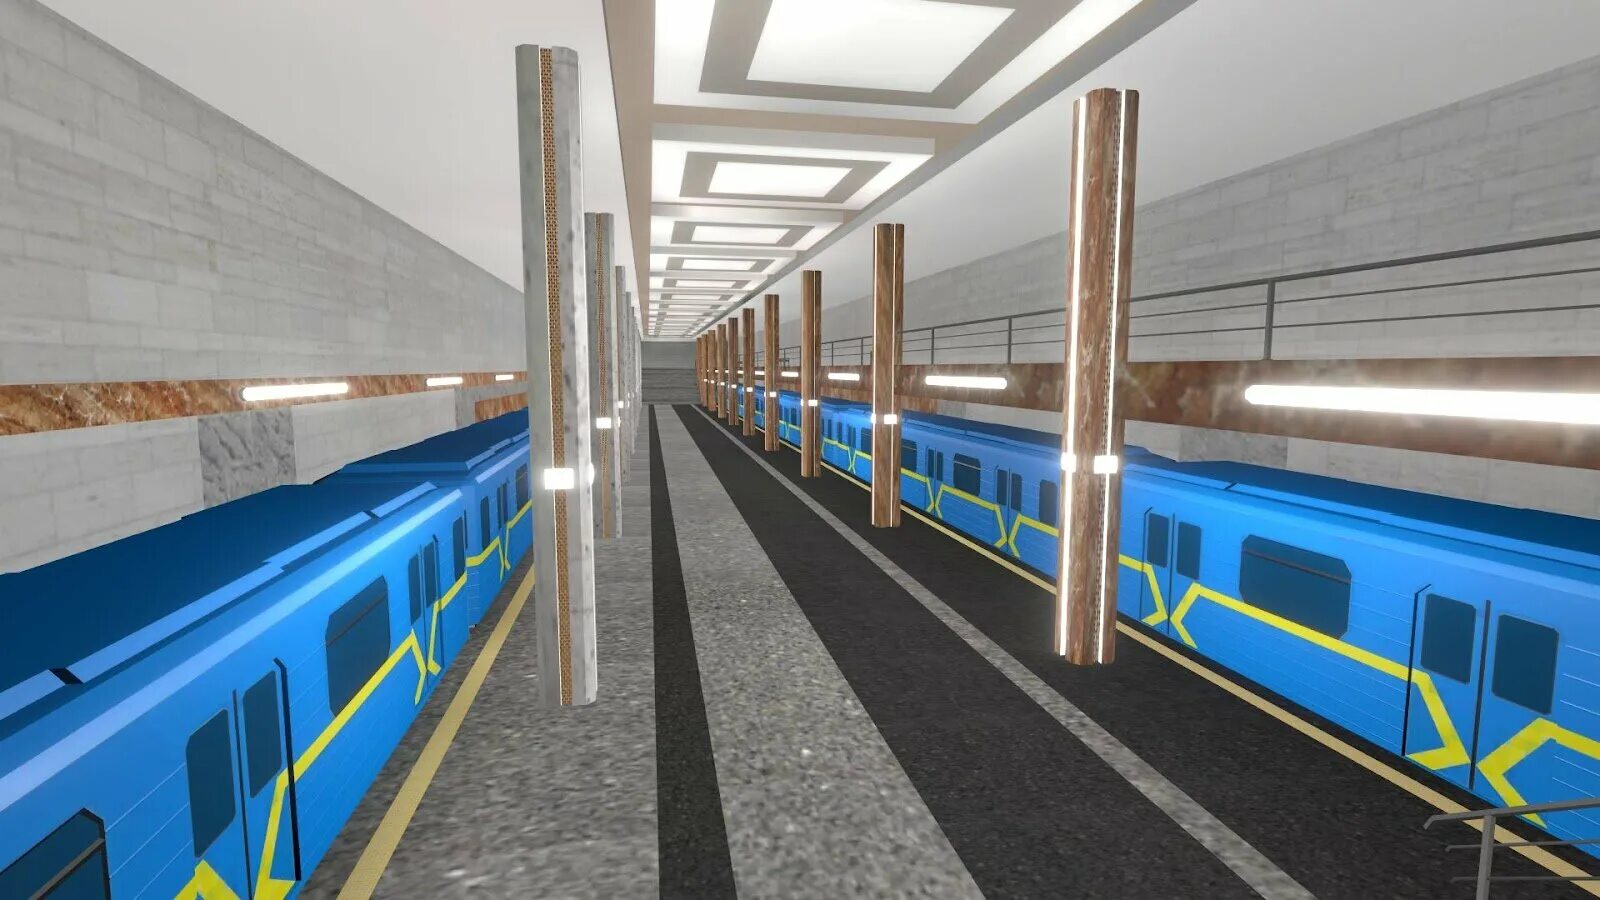 Euro Subway Simulator 1.3.0. Subway Simulator 3d станция Западный вокзал. Subway Simulator 3d. Метро симулятор 3д - поезда. Московское метро 3d игра